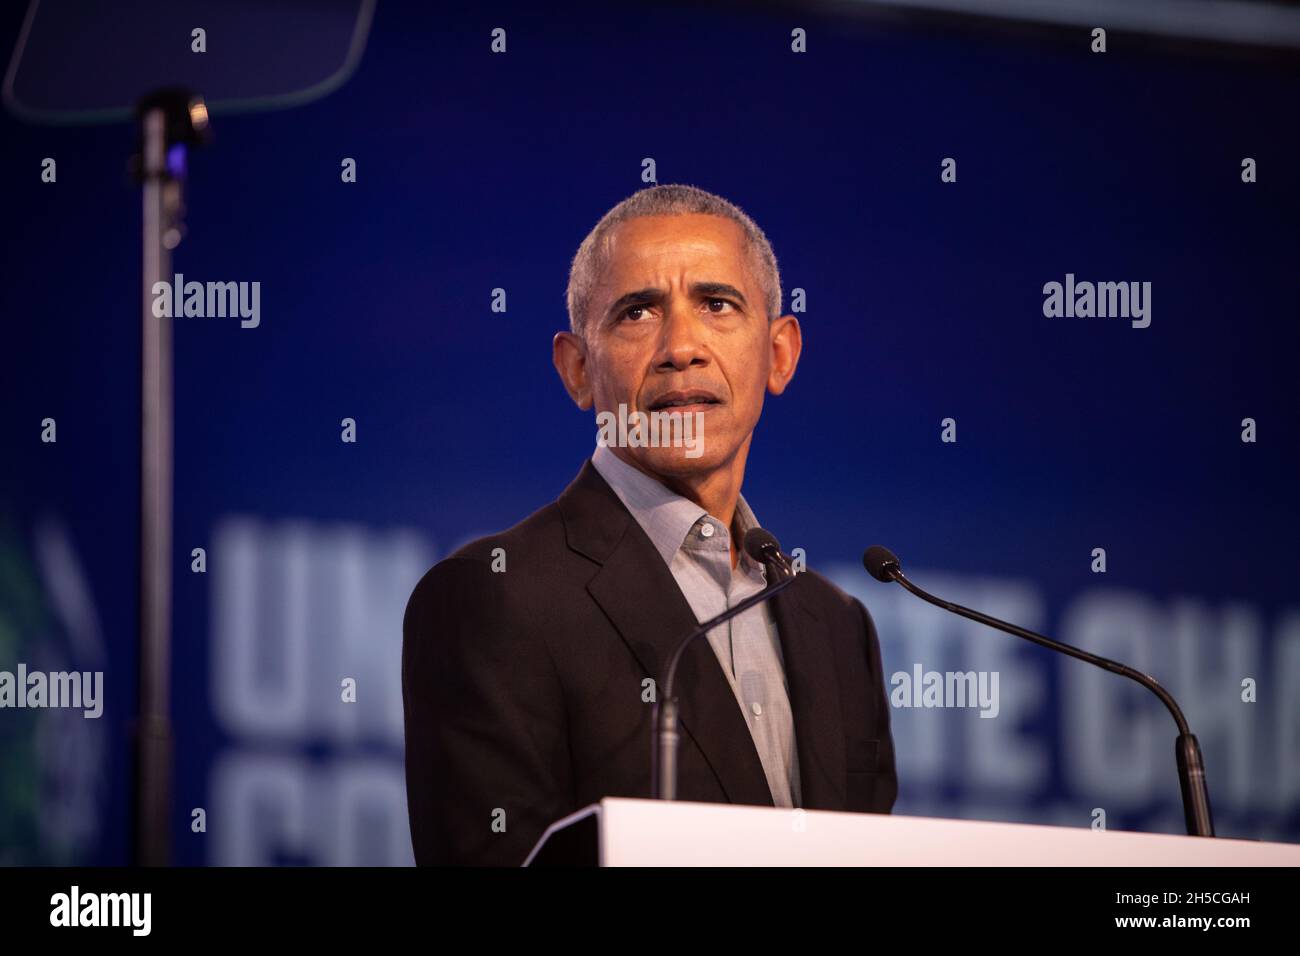 Glasgow, Scozia, Regno Unito. Barack Obama, ex presidente degli Stati Uniti d'America, parla alla 26a Conferenza delle Nazioni Unite sul cambiamento climatico, nota come COP26, a Glasgow, Scozia, Regno Unito, L'8 novembre 2021. Foto:Jeremy Sutton-Hibbert/Alamy Live News. Foto Stock